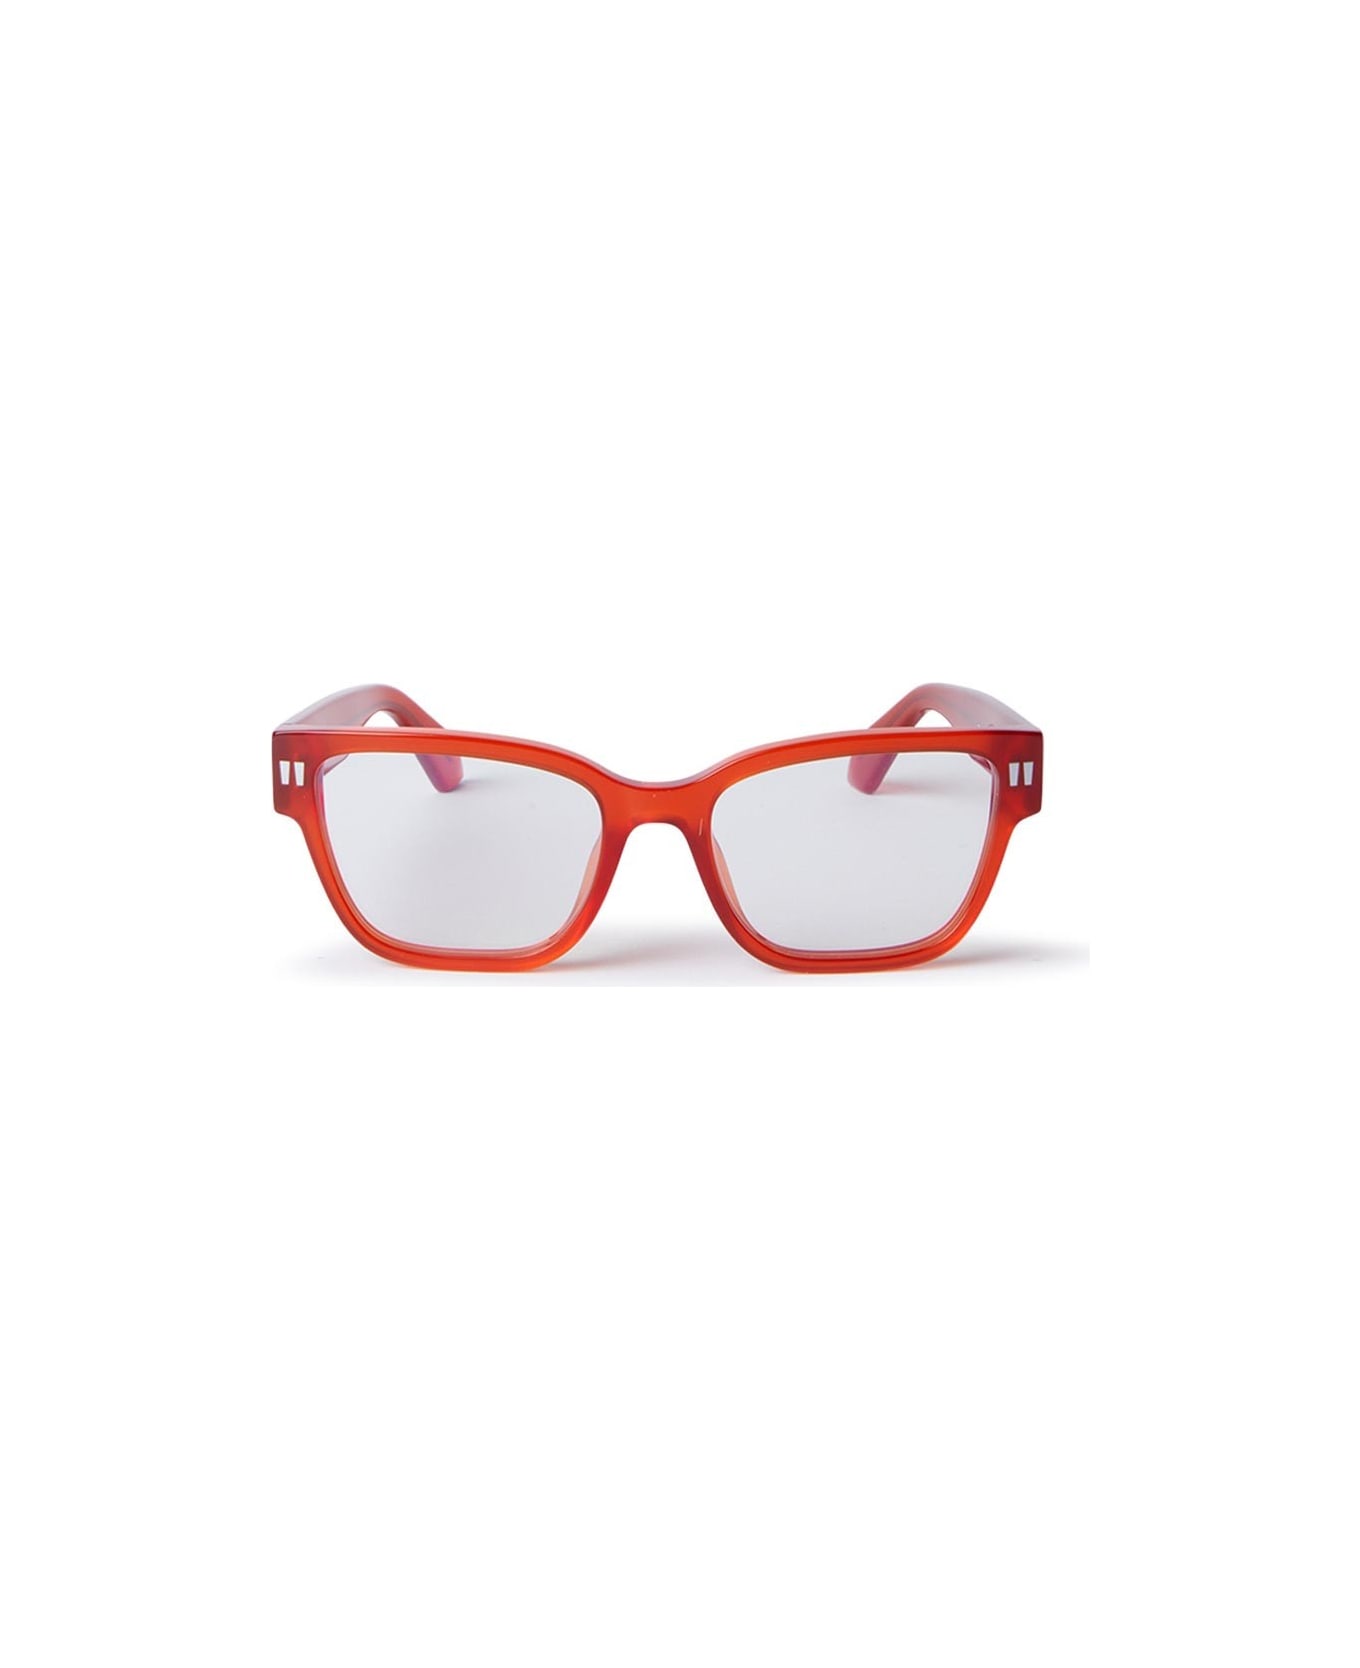 Off-White Glasses - Rosso